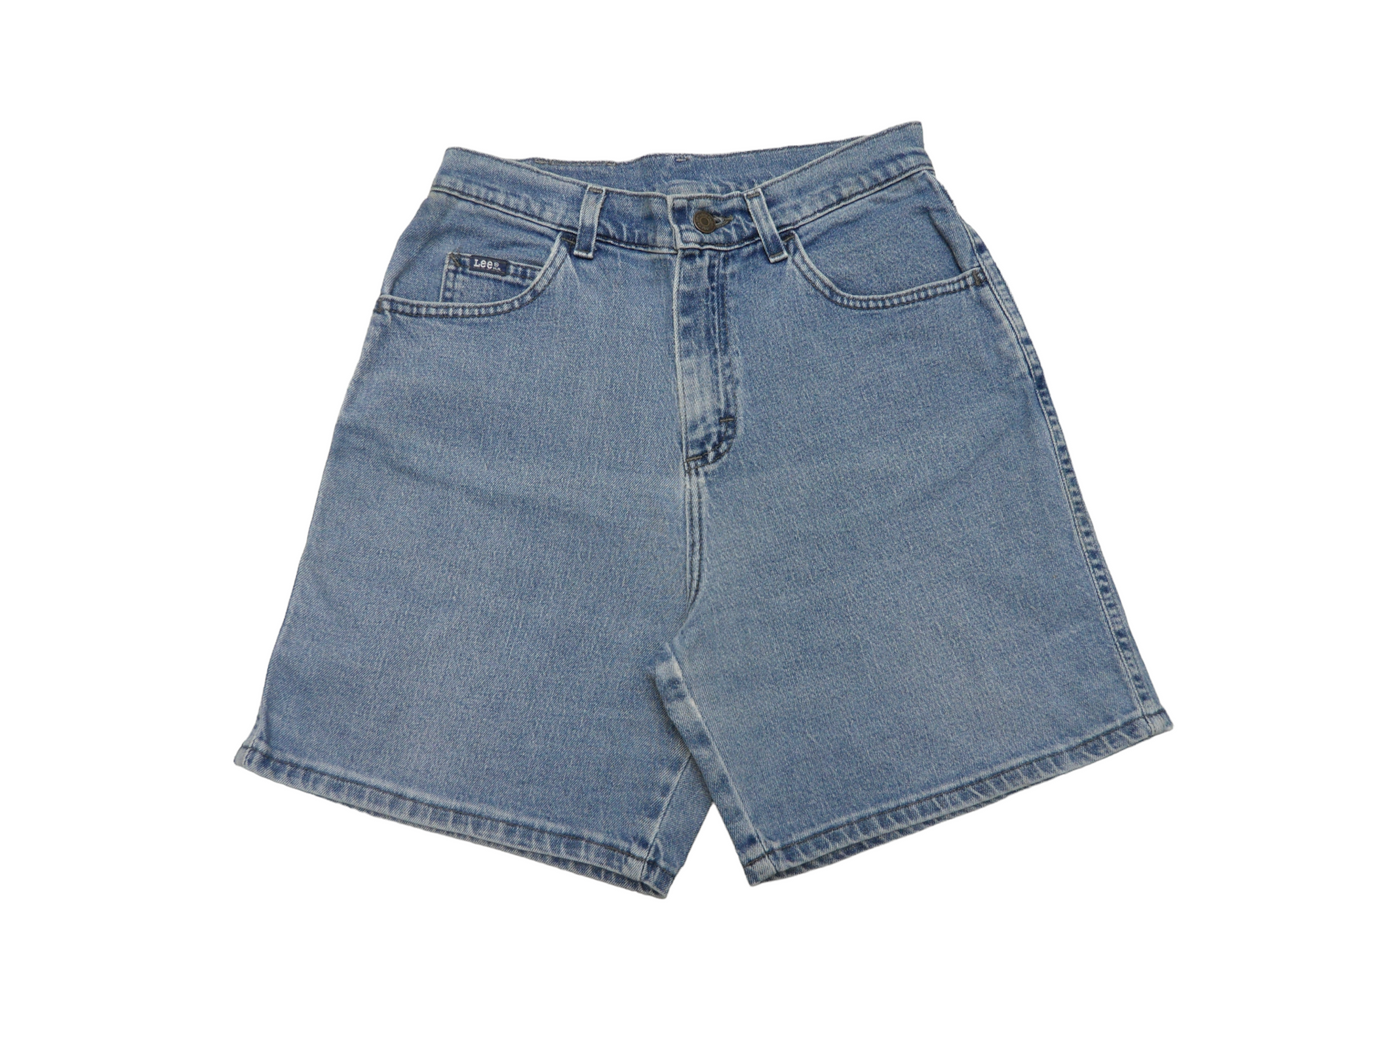 Vintage LEE Light Blue Denim Women's Shorts Size-8 (AU)